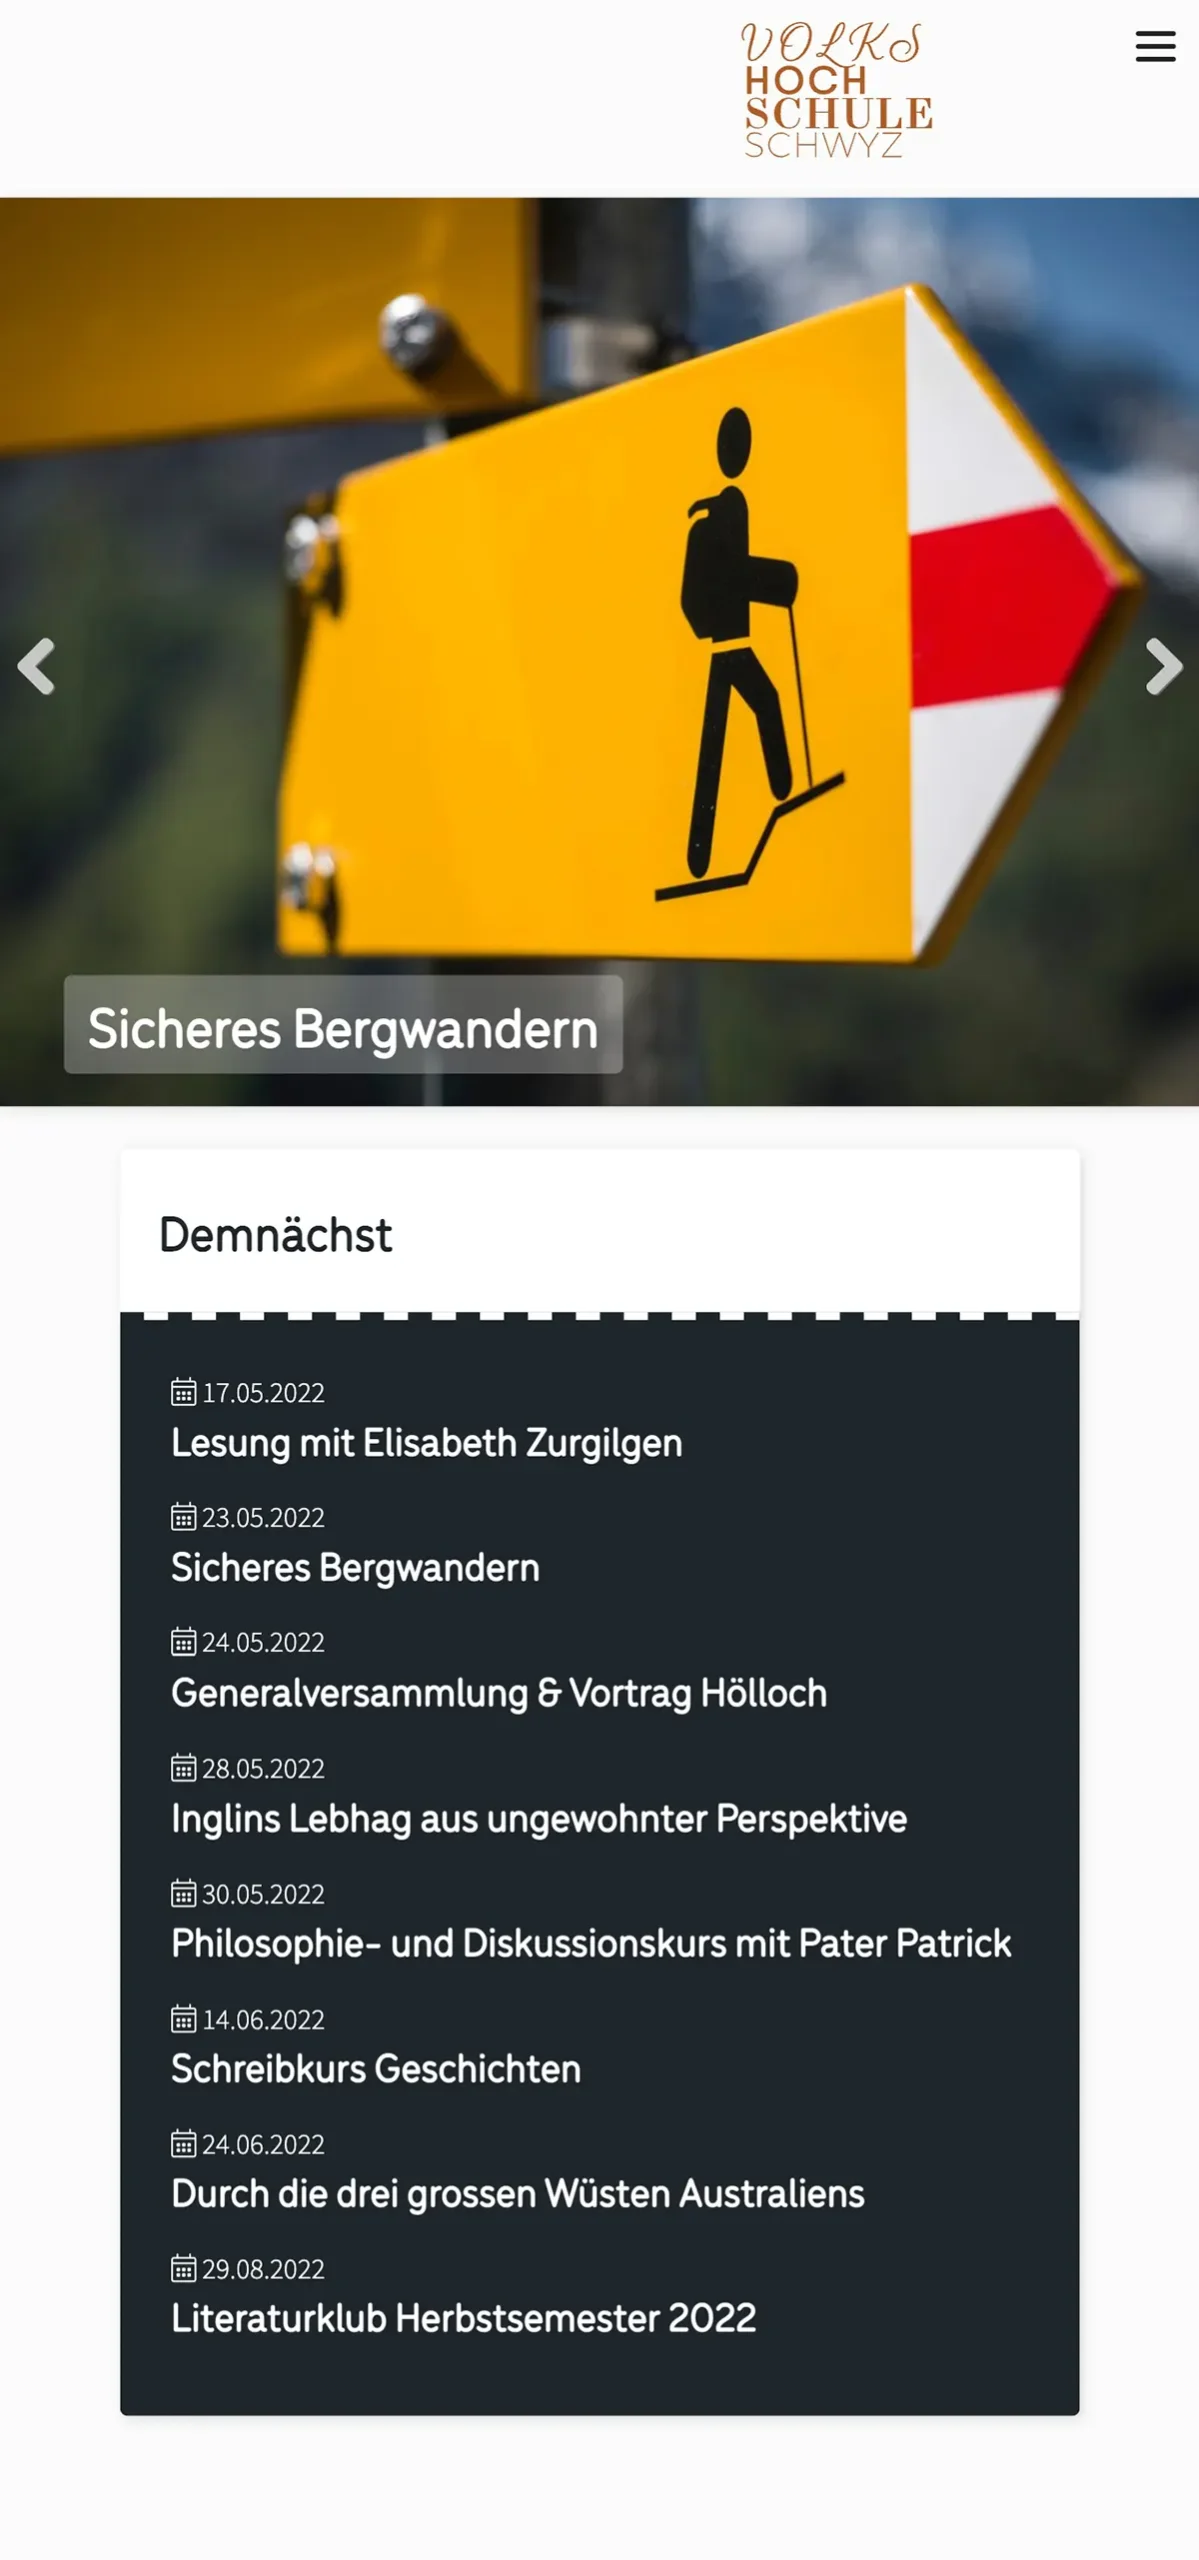 Website für Kultur und Wirtschaft | Webdesign |Schwyz | Zug | Luzern | Altdorf | ulrich.digital